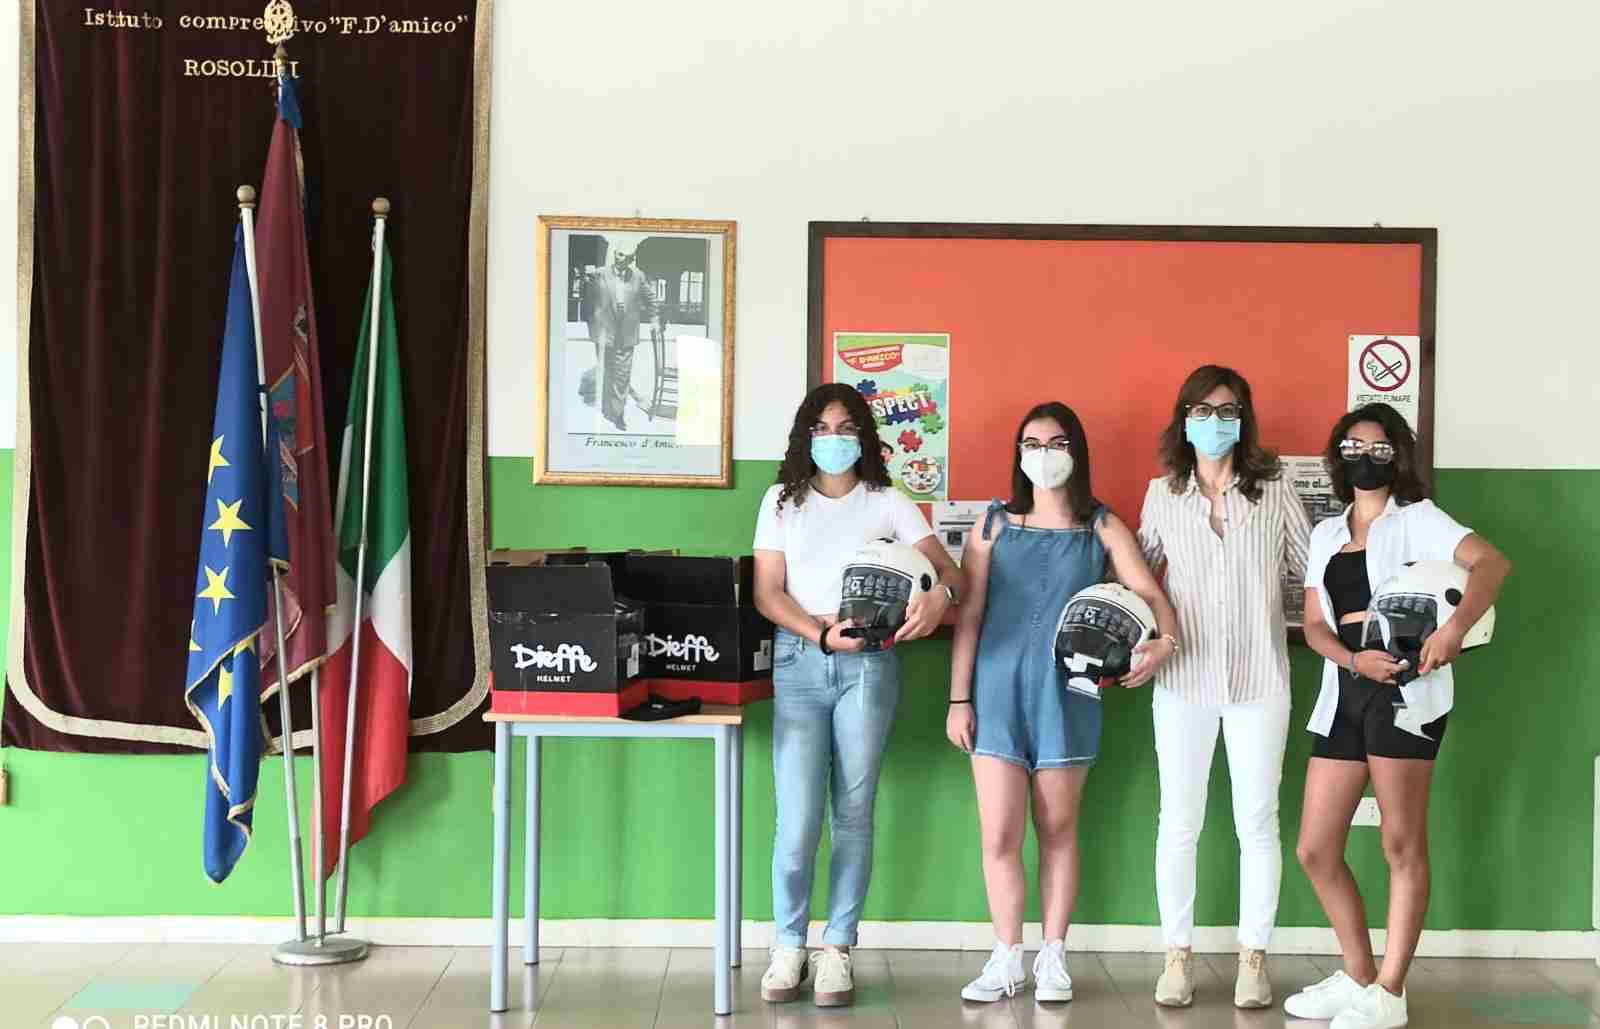 “Un casco vale una vita”, tre alunne dell’Istituto D’Amico premiate al concorso per i loro disegni